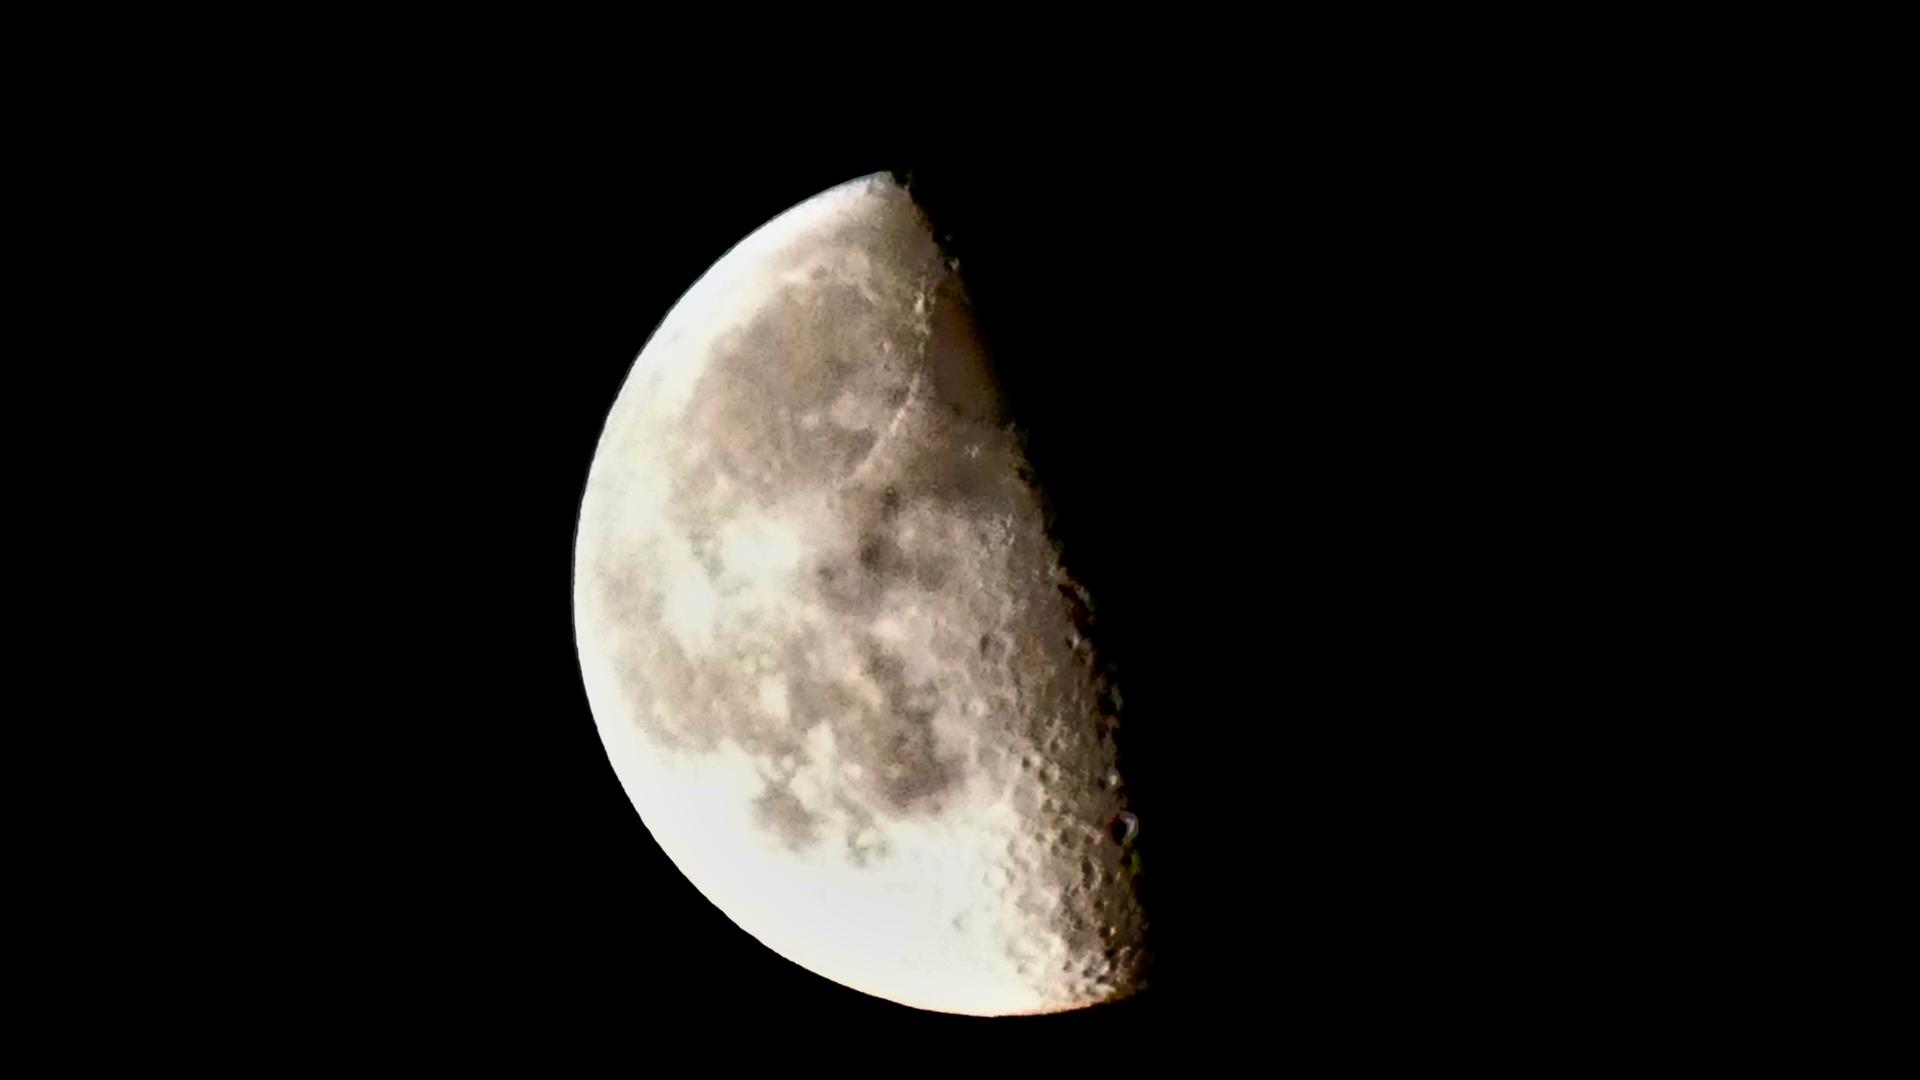 Ein Bild vom Mond. Rundherum ist es schwarz.